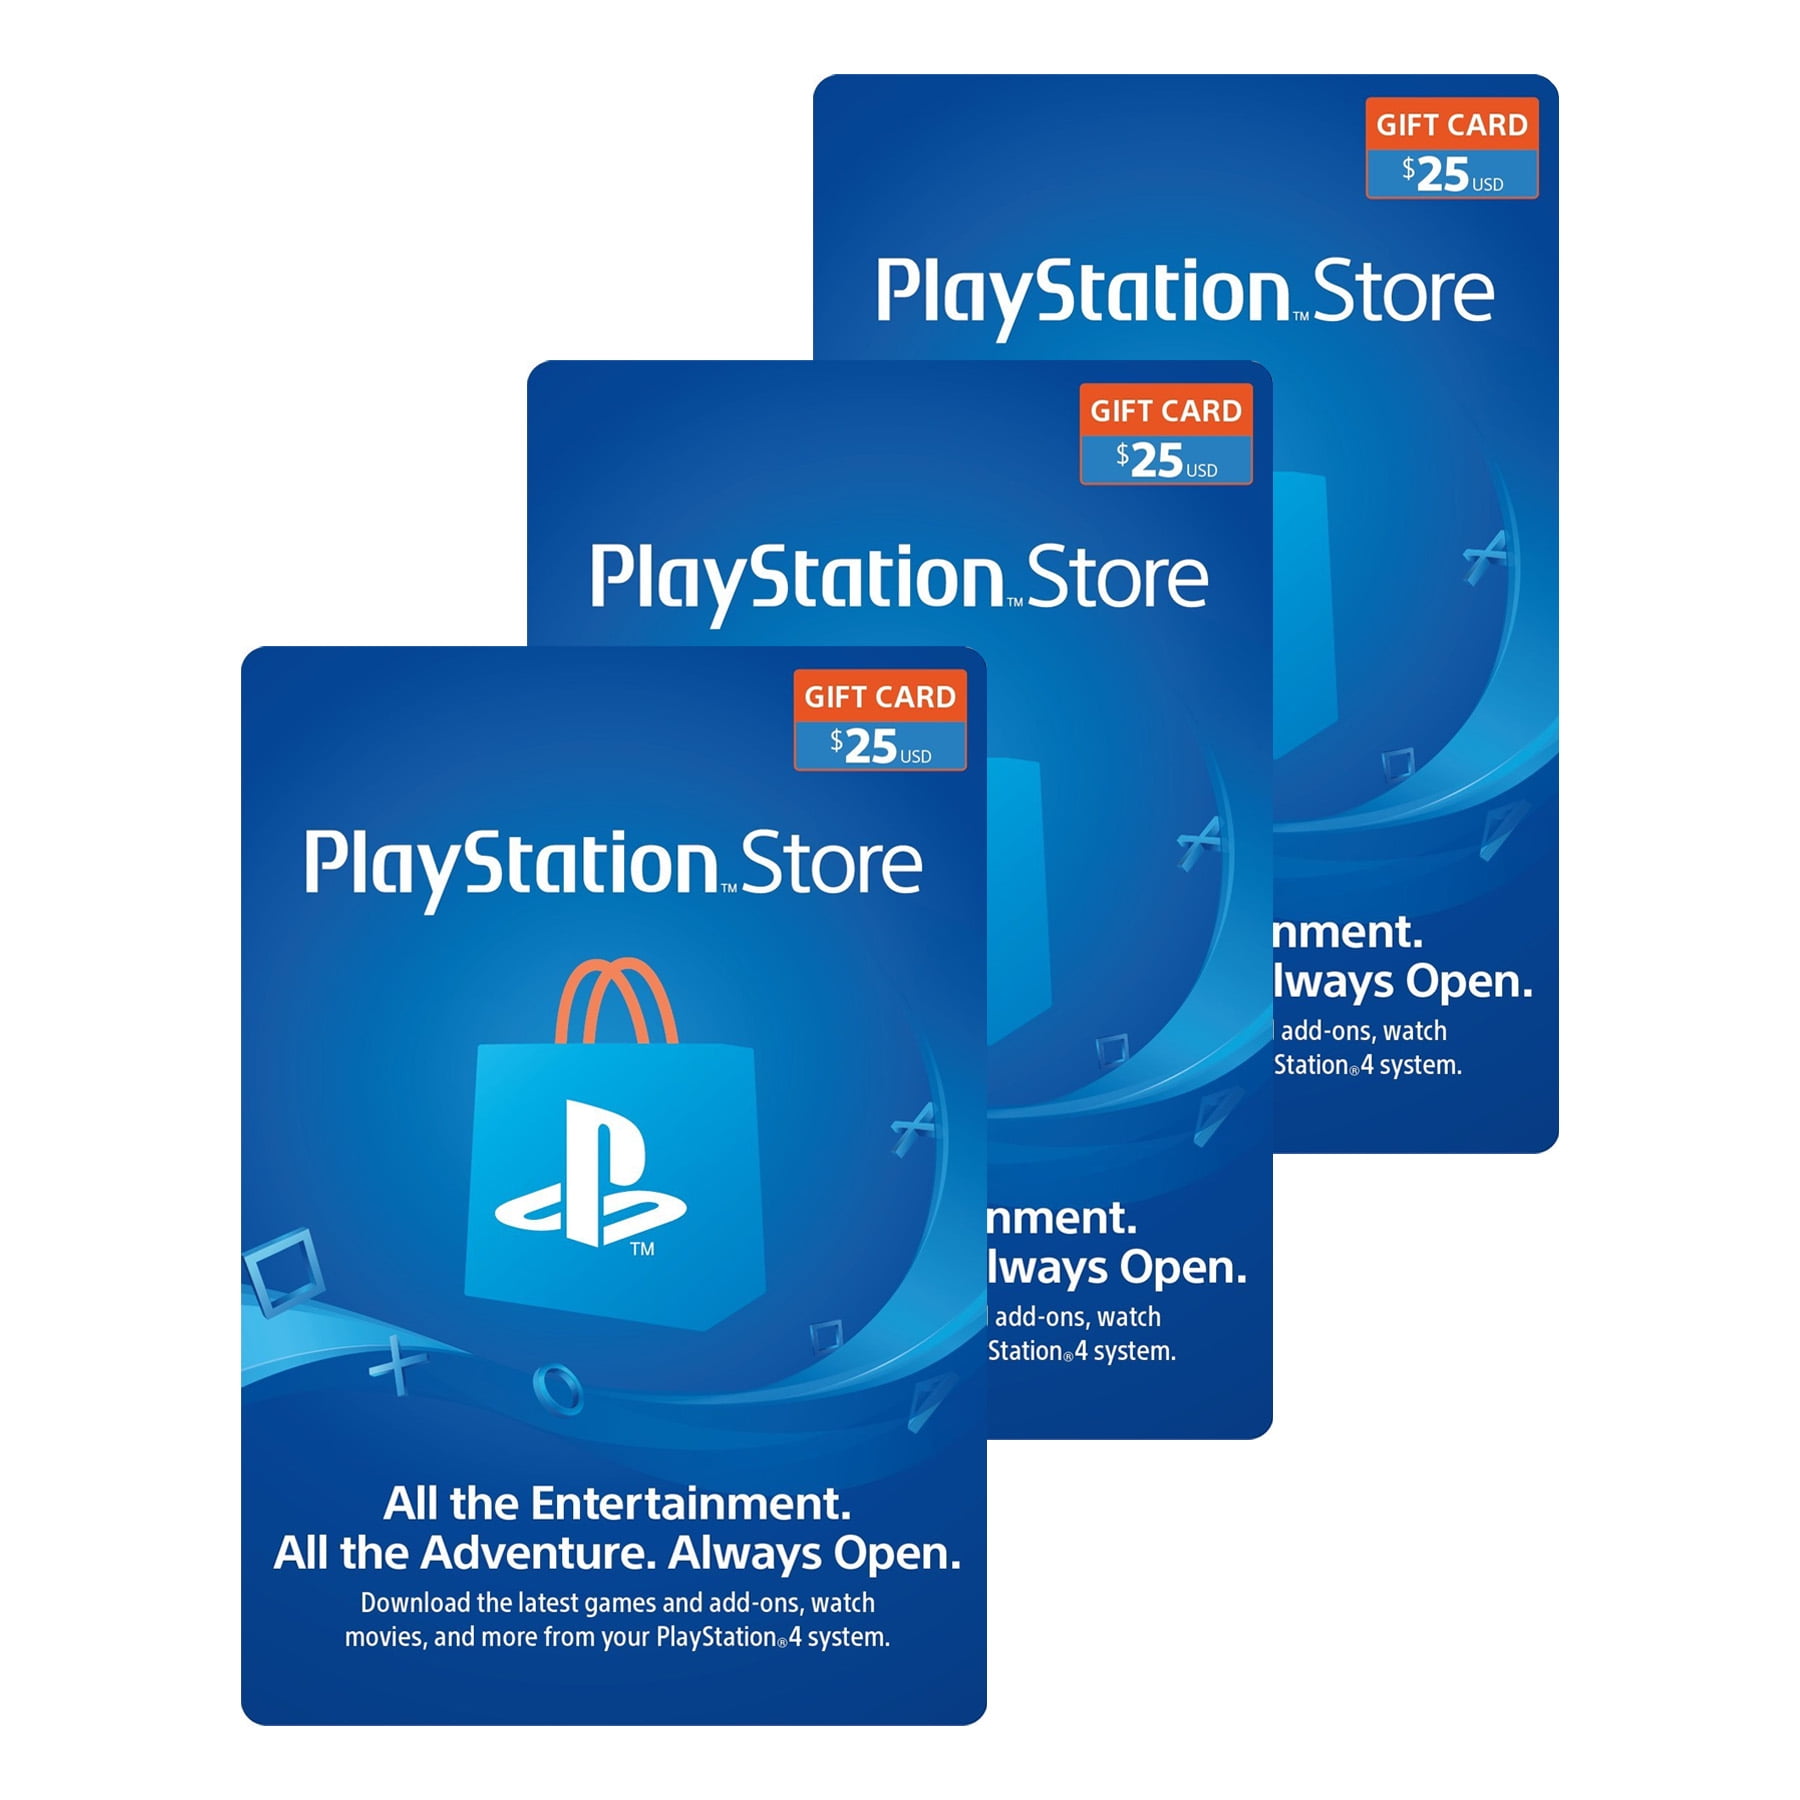 vejledning Il på trods af Sony PlayStation Physical Gift Cards $75.00 Multi-Pack (3 x $25.00 cards) -  Walmart.com